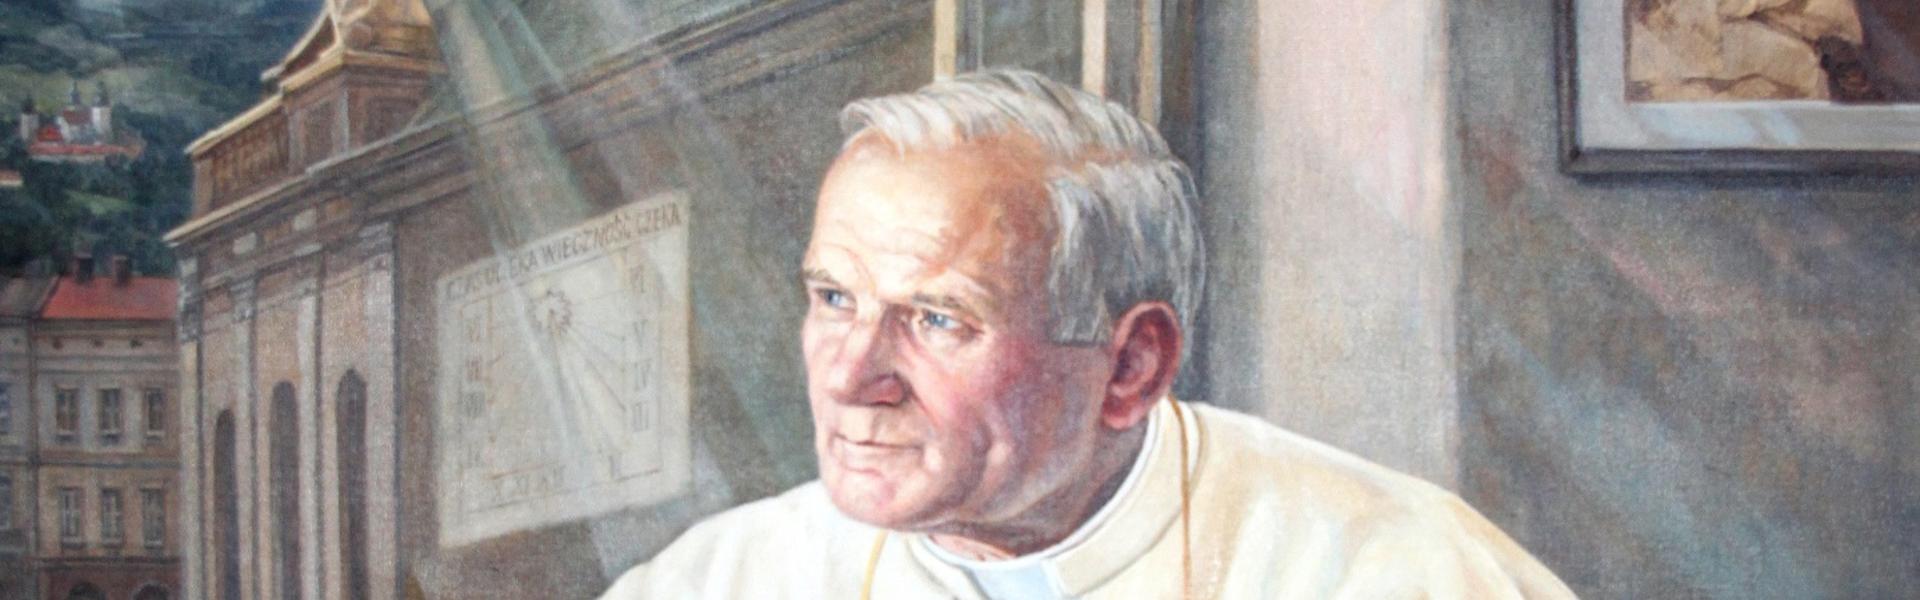 Obraz przedstawiajacy Jana Pawła II przy klęczniku, obok otwartego okna, przez które widoczna jest bazylika w Wadowicach.